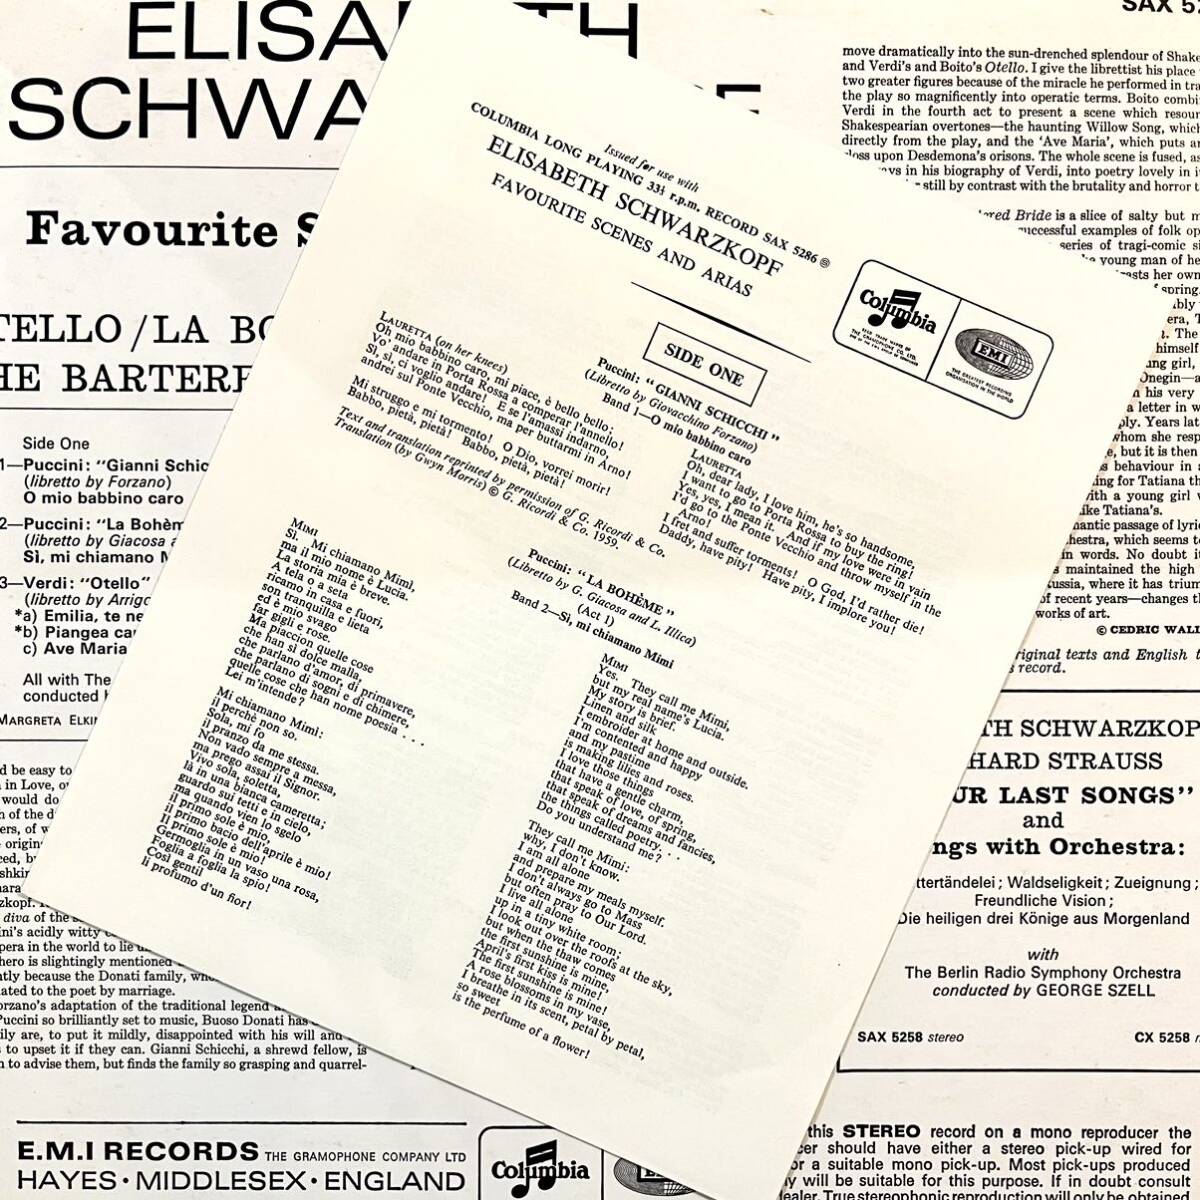 英COLUMBIA S/C SAX5286 オリジナル シュヴァルツコップ 『フェイヴァリット・シーン& アリアズ』の画像3